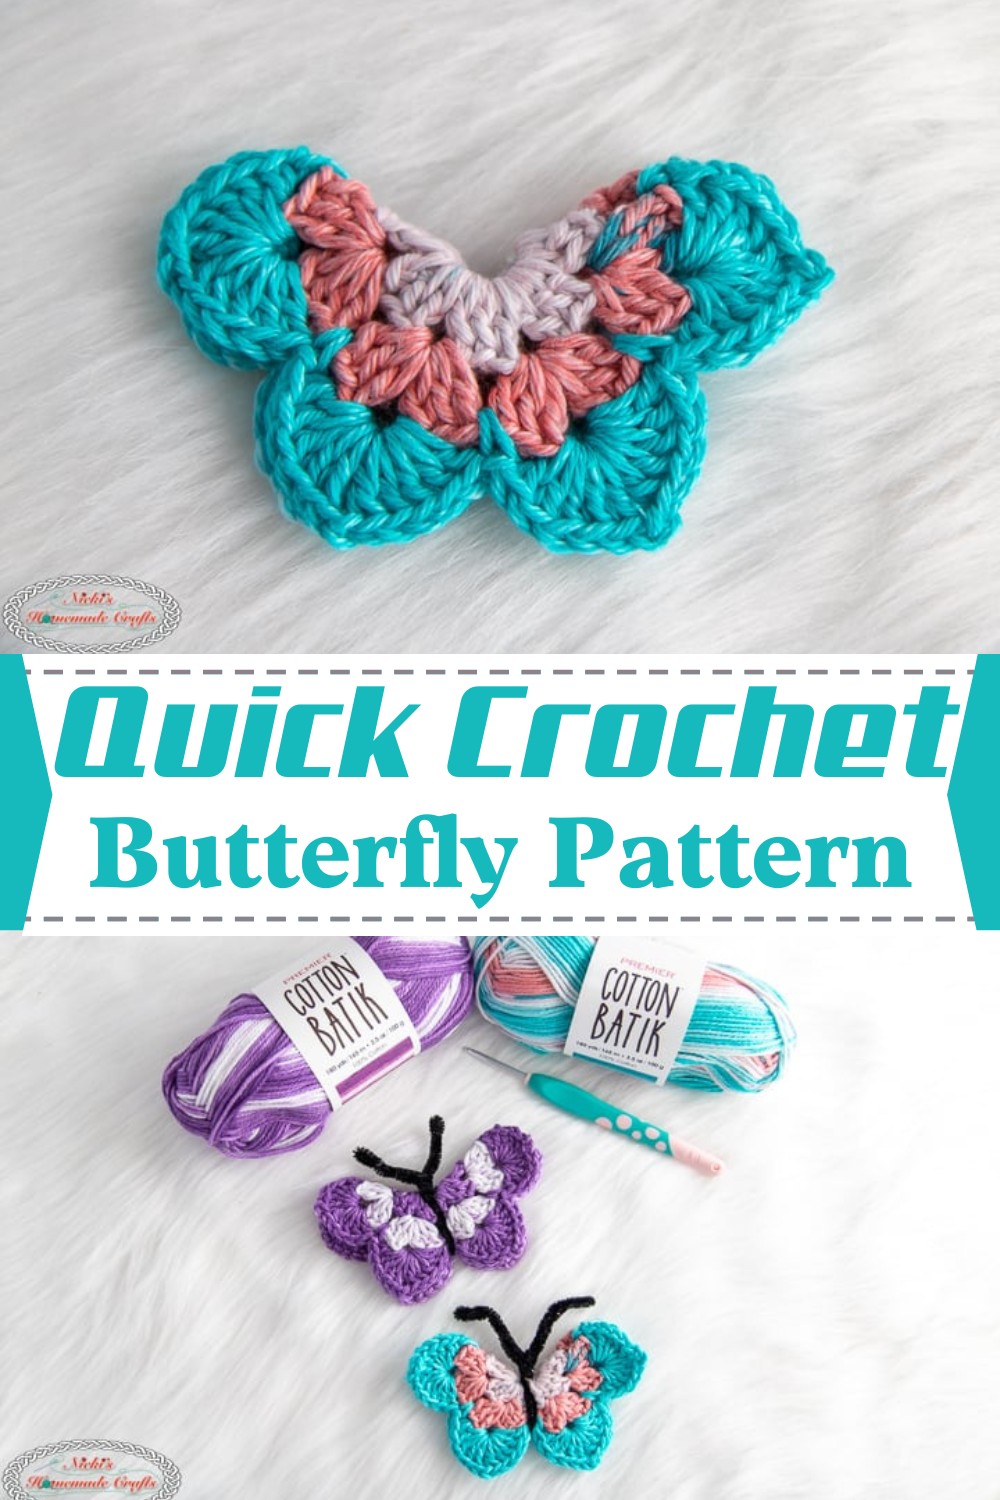 Quick Crochet Butterfly Pattern Free